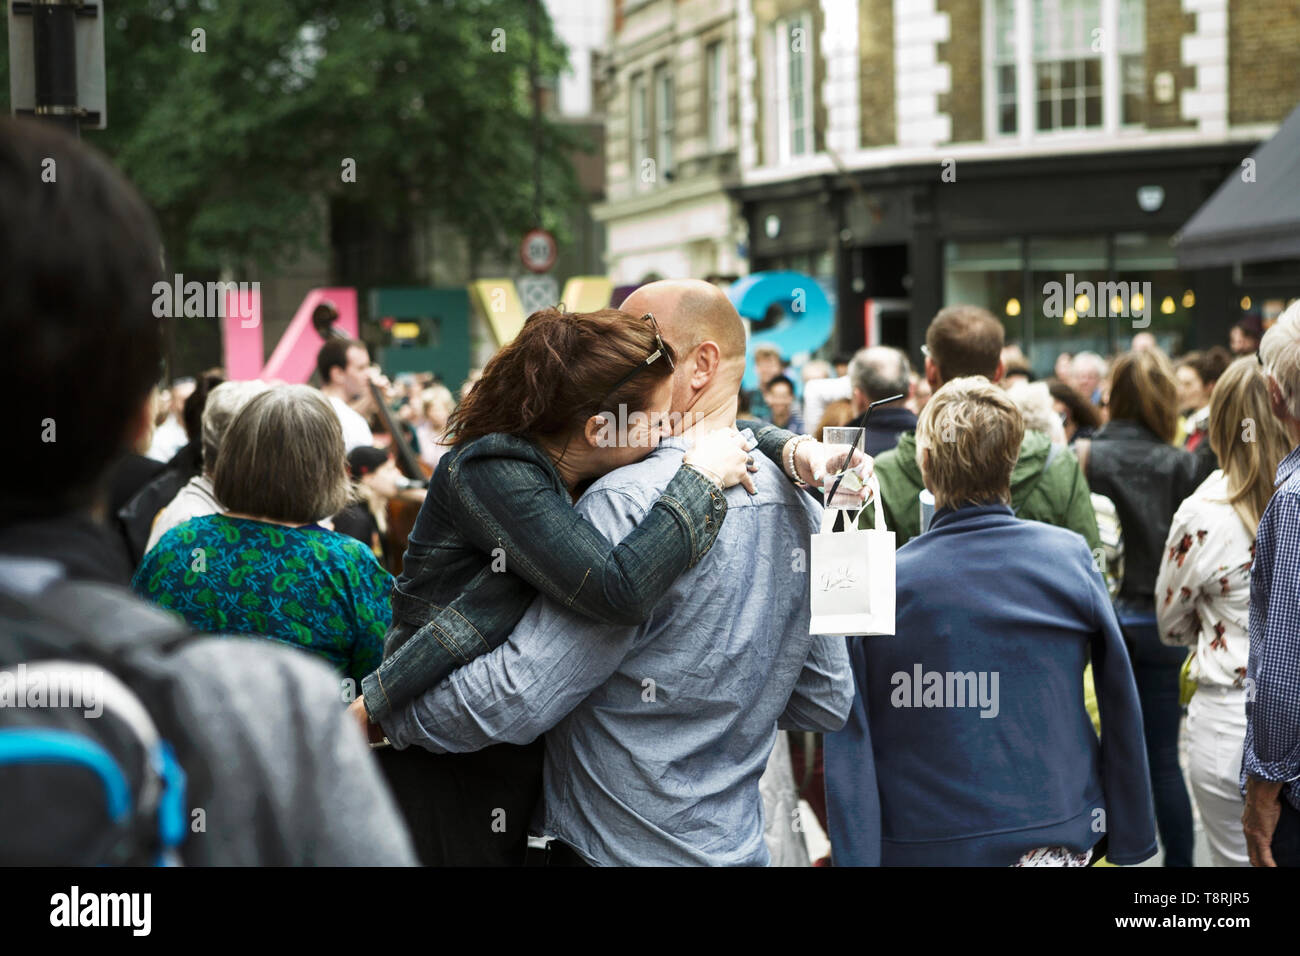 Affectionate couple hugging dans un groupe de personnes. Les droits de l'affection. L'émotion humaine. Scène de rue à Londres. Banque D'Images